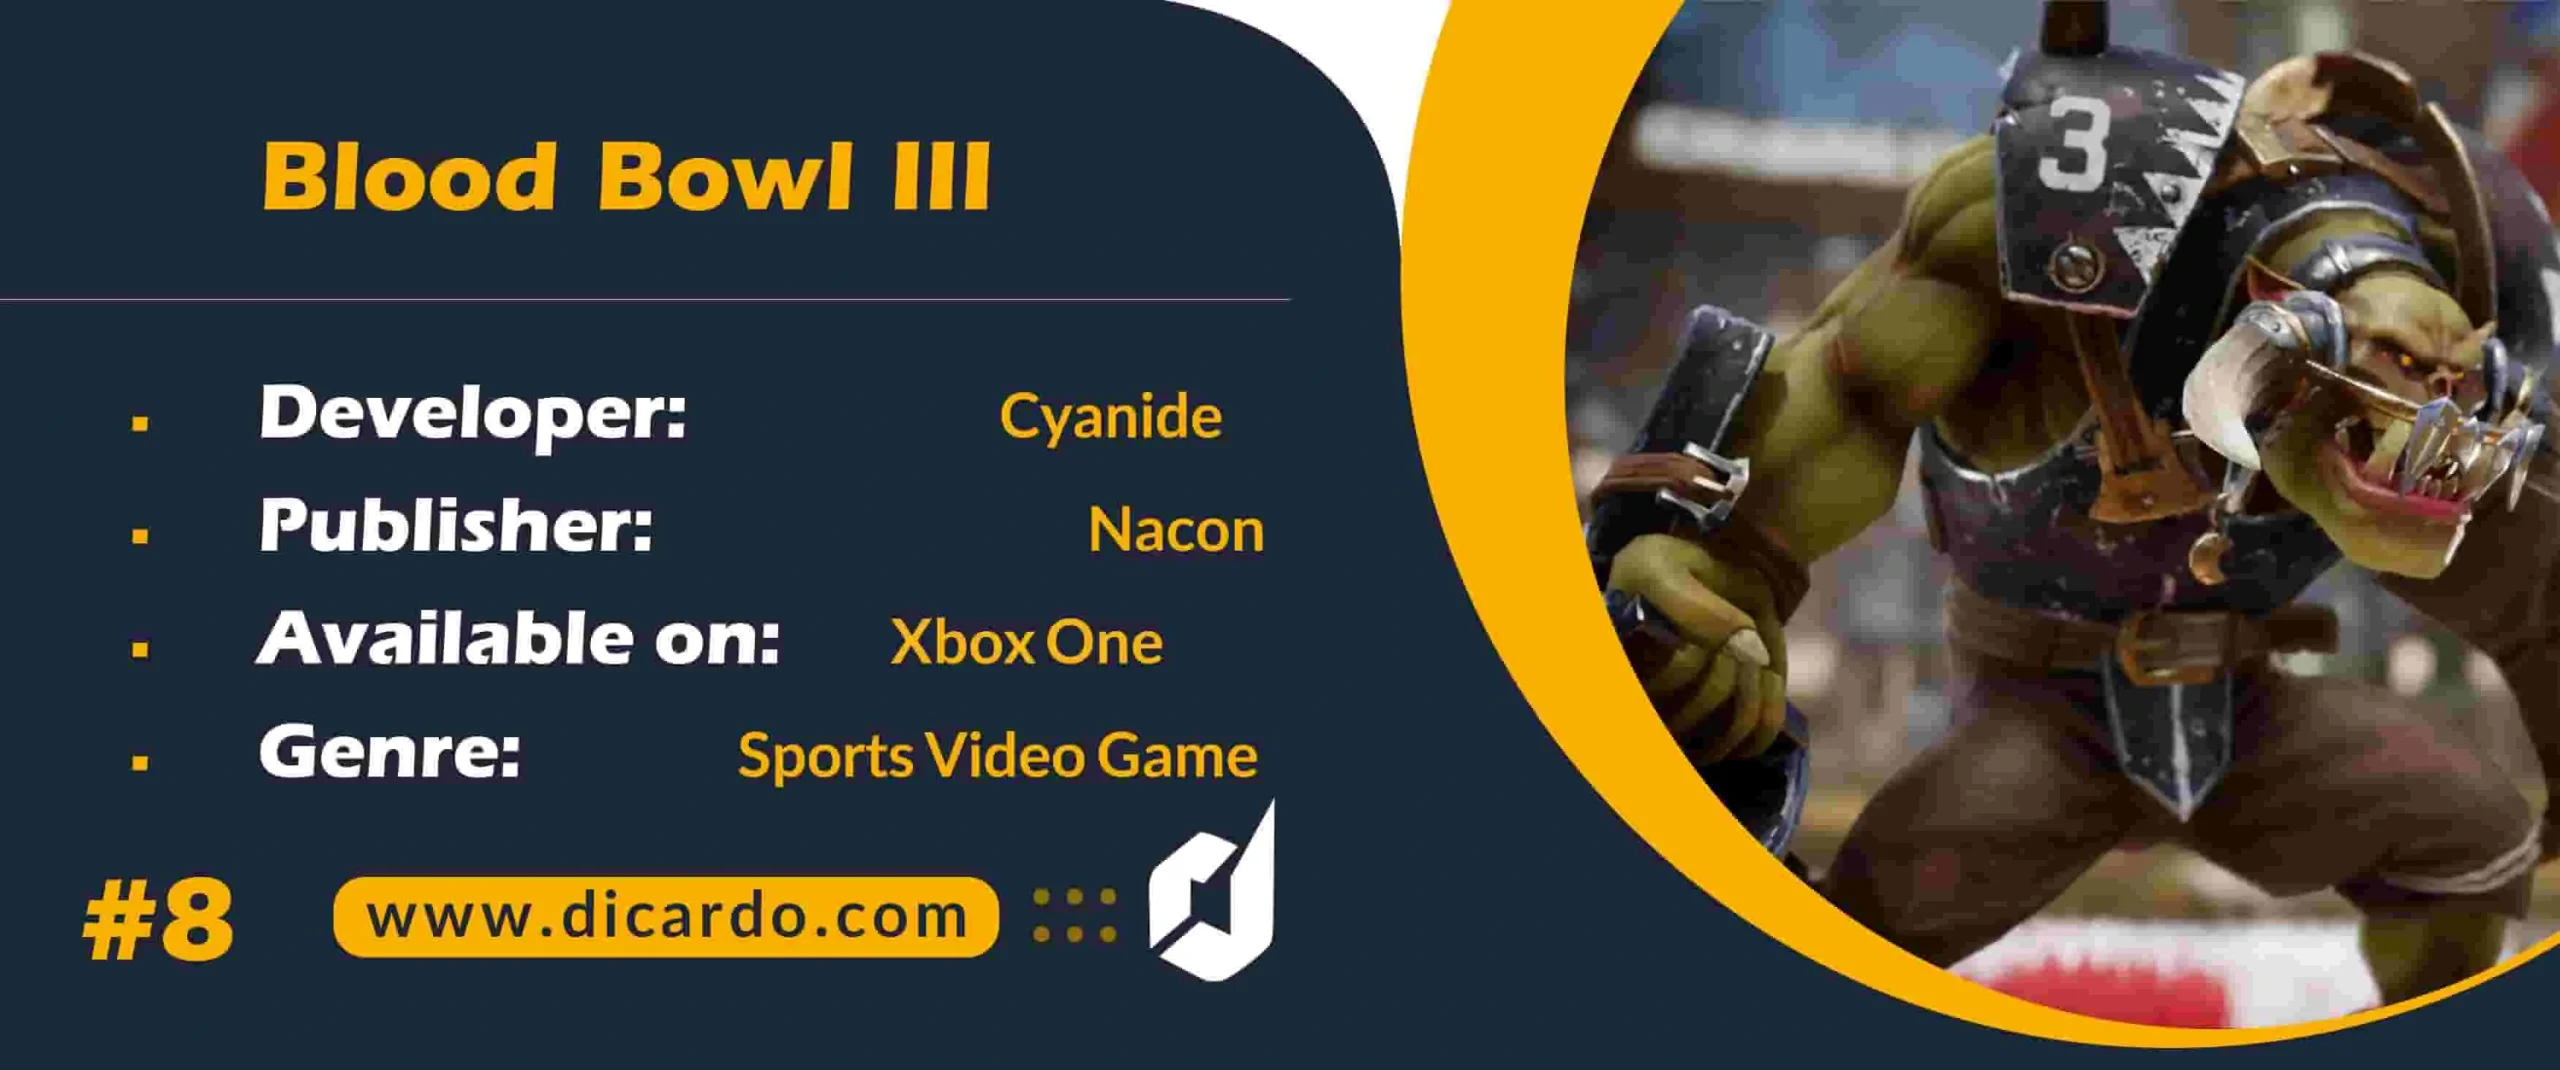 #8 بلود بول 3 Blood Bowl III از برترین بازیهای Xbox One